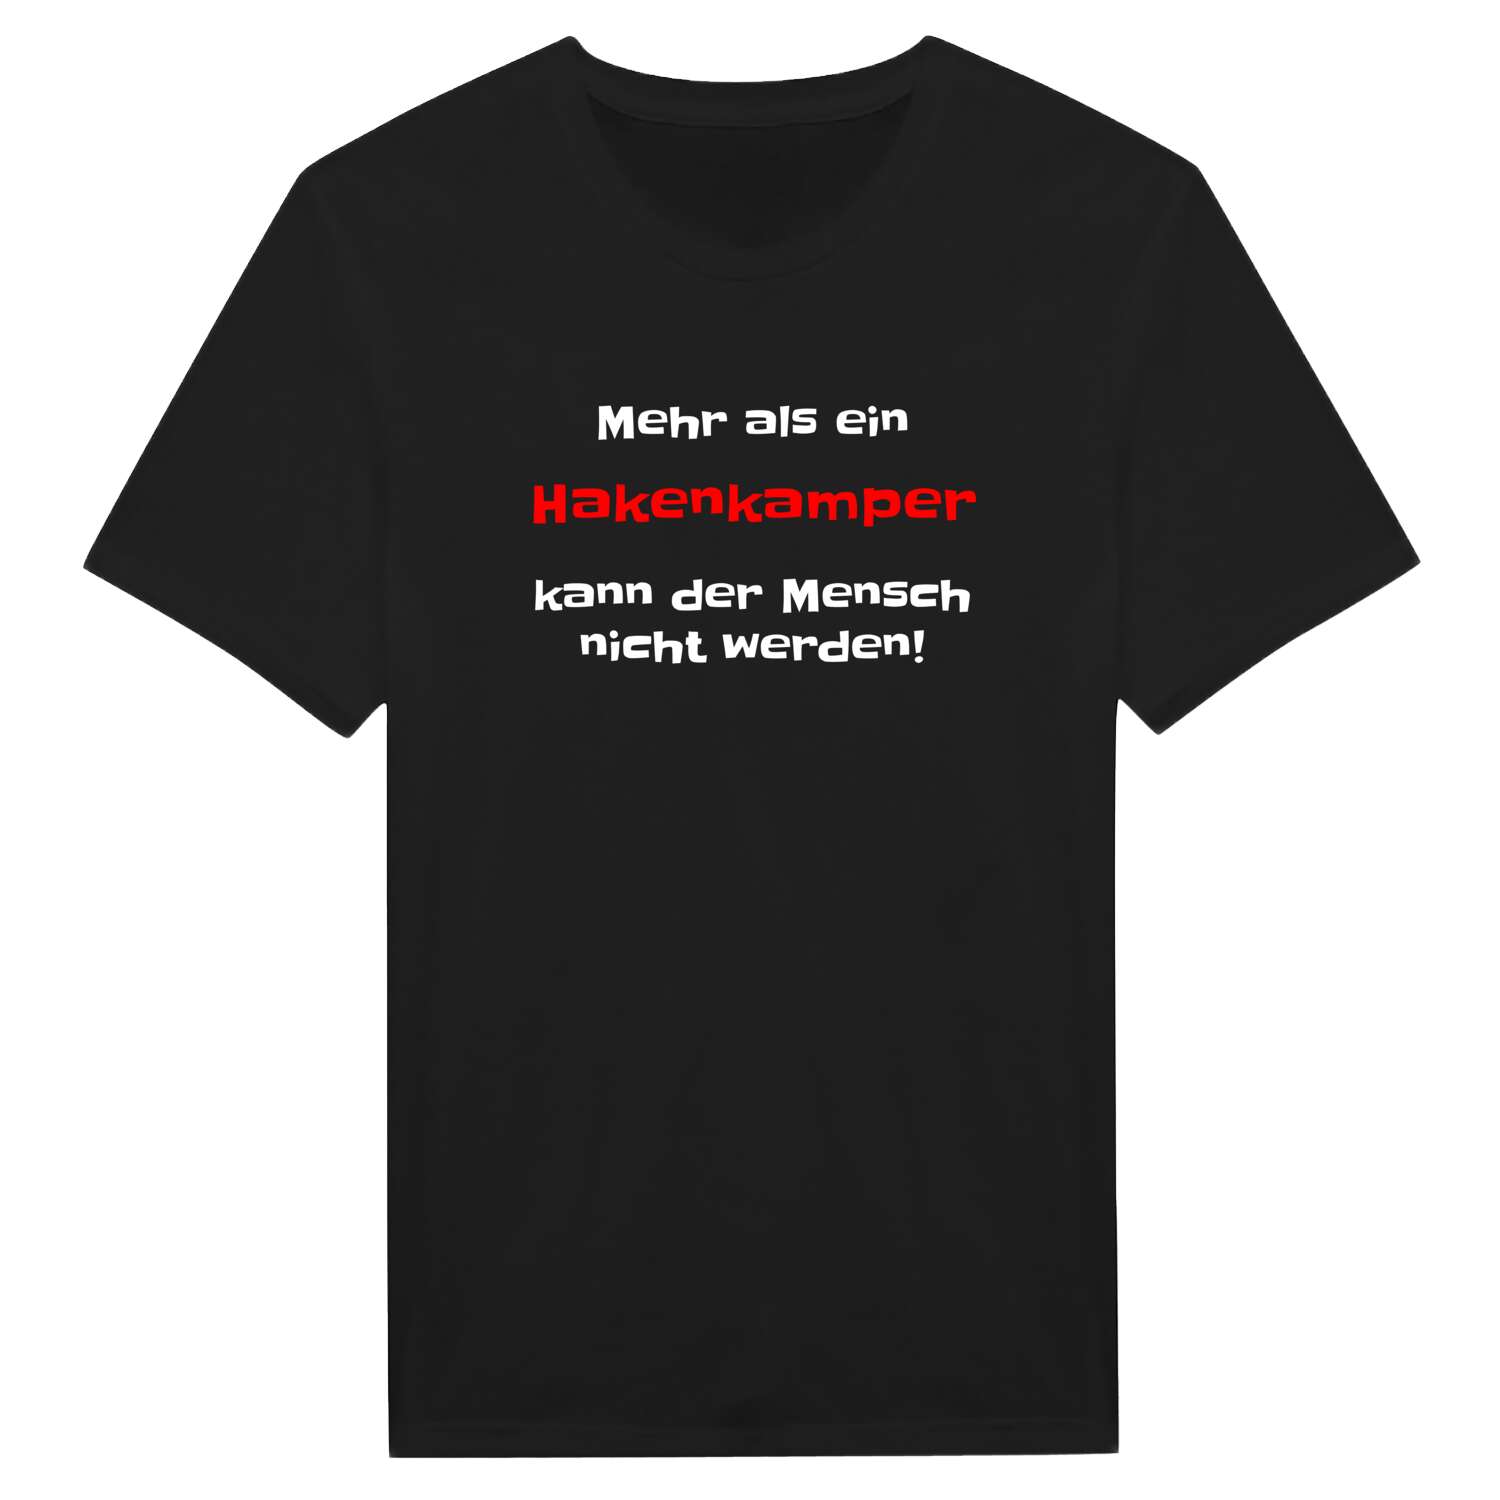 Hakenkamp T-Shirt »Mehr als ein«